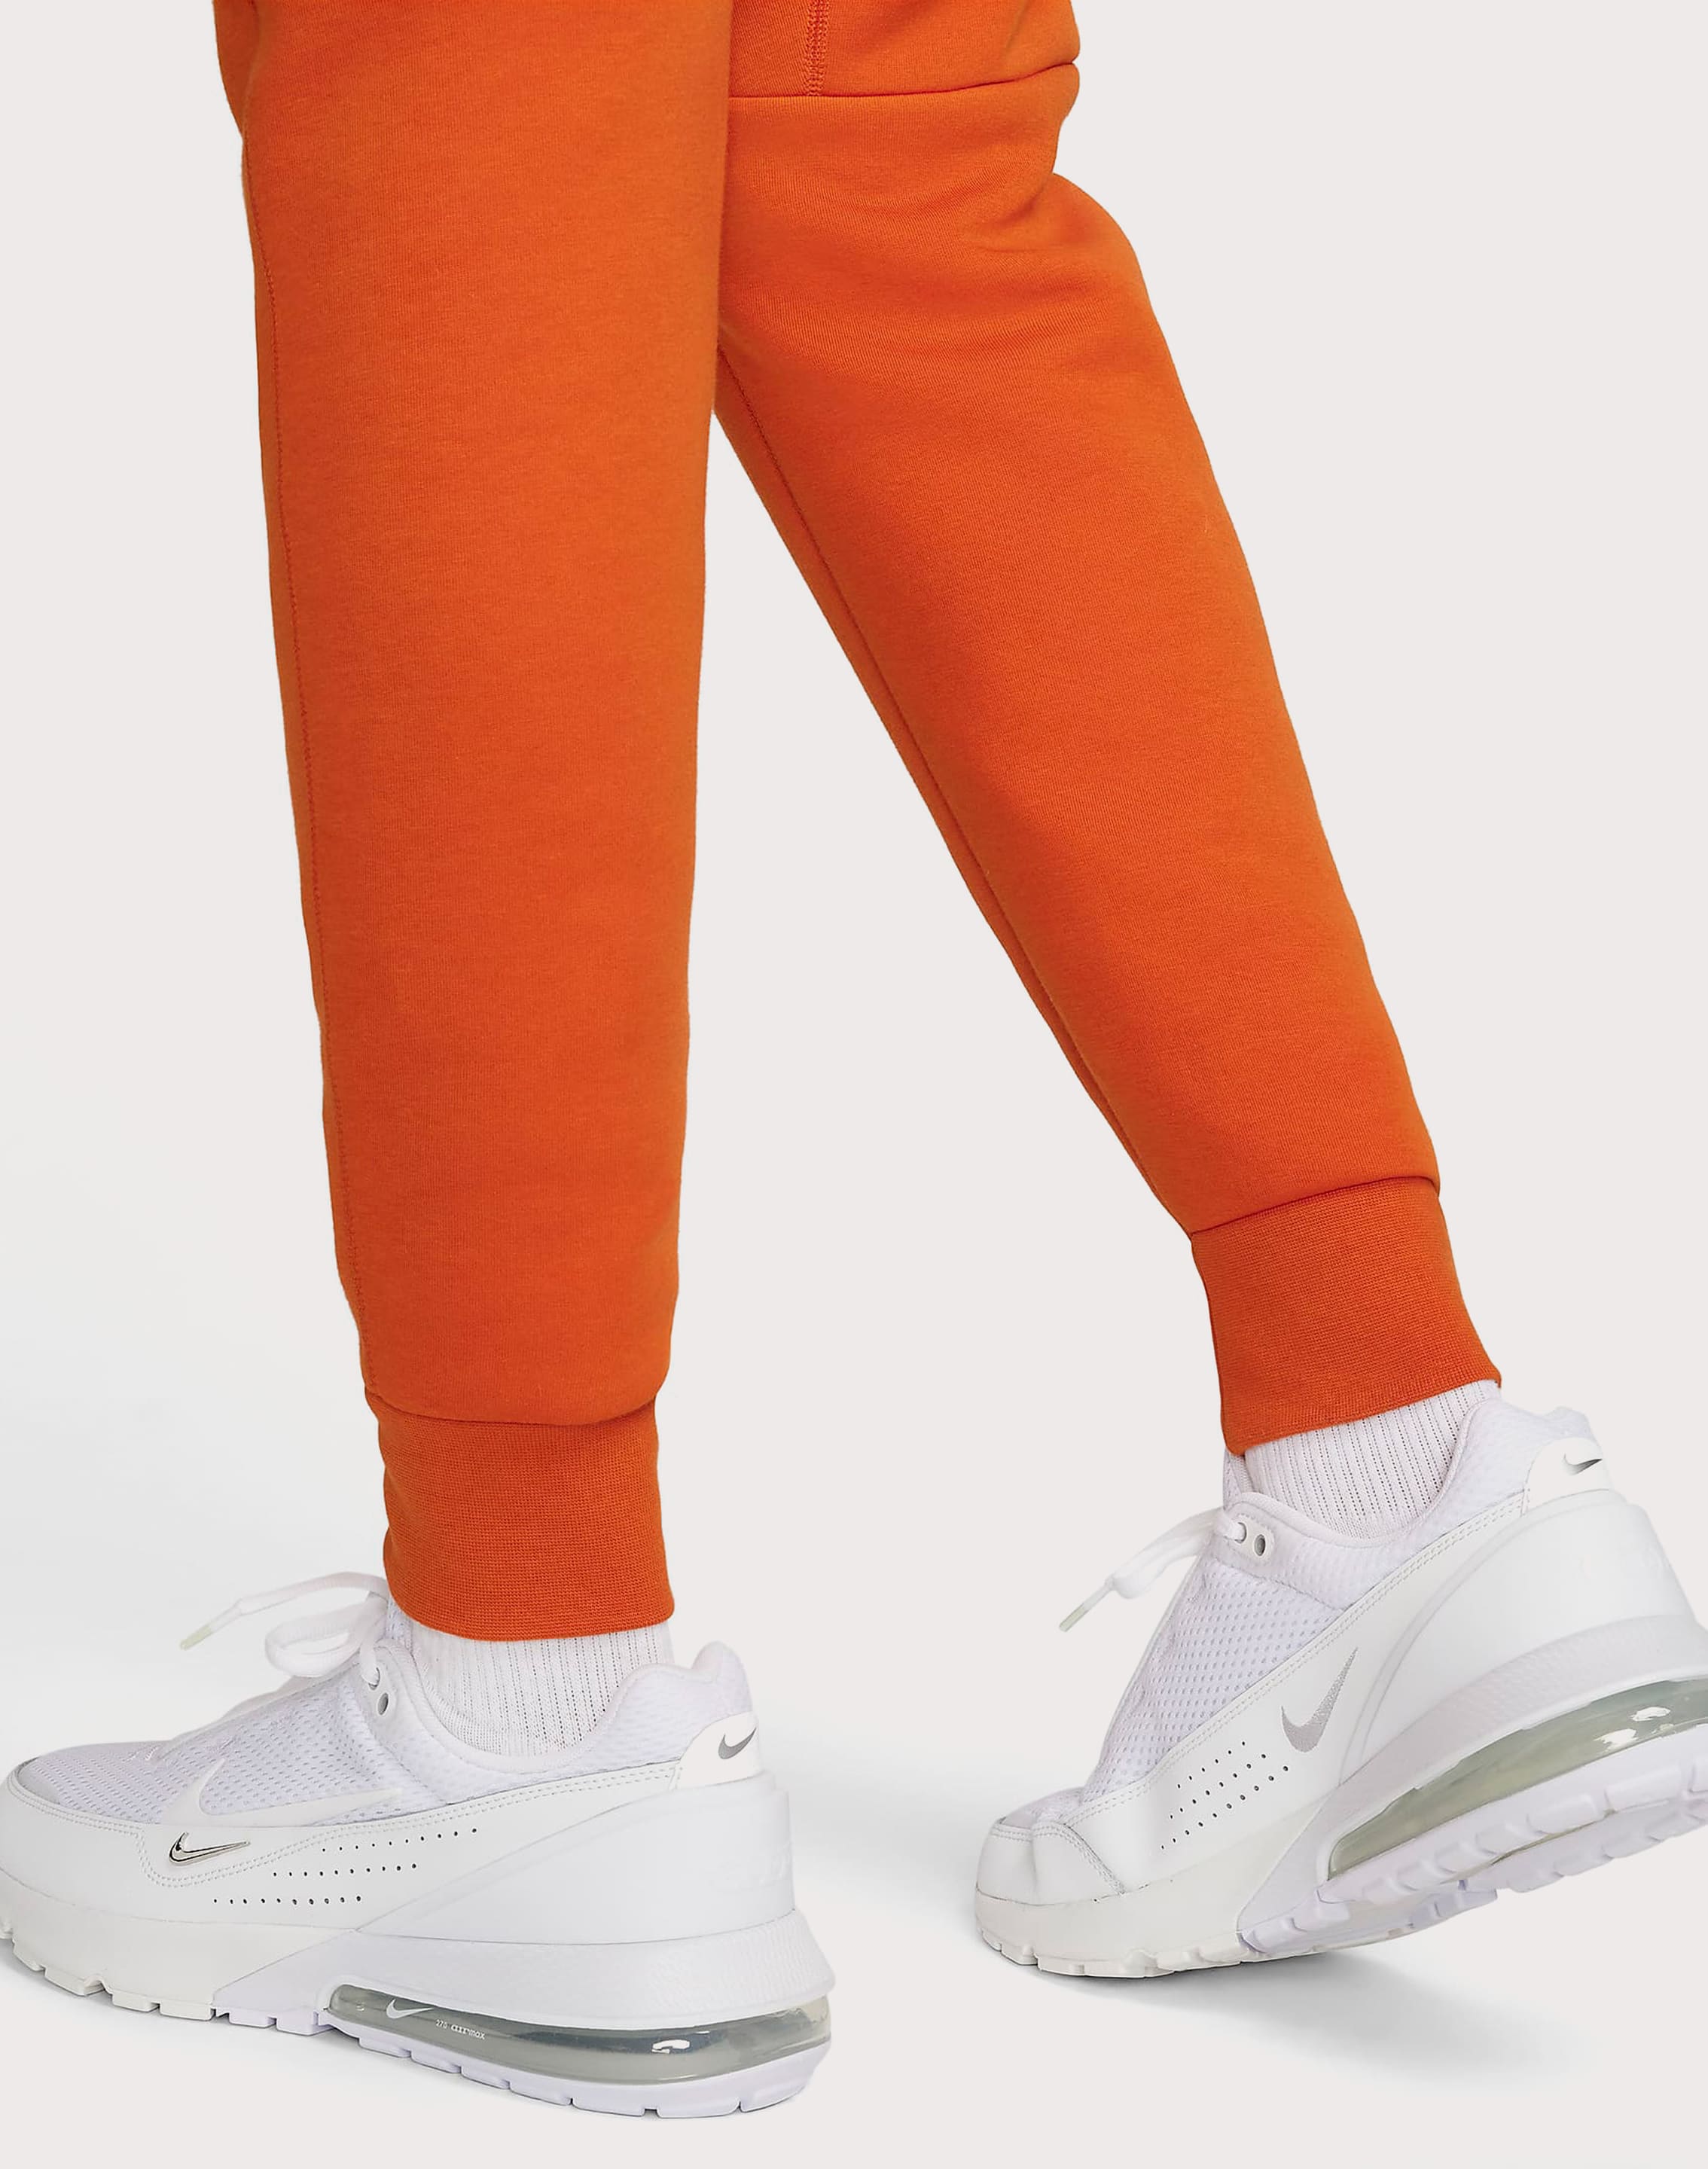 Nike Nsw Tech Fleece Joggers – DTLR